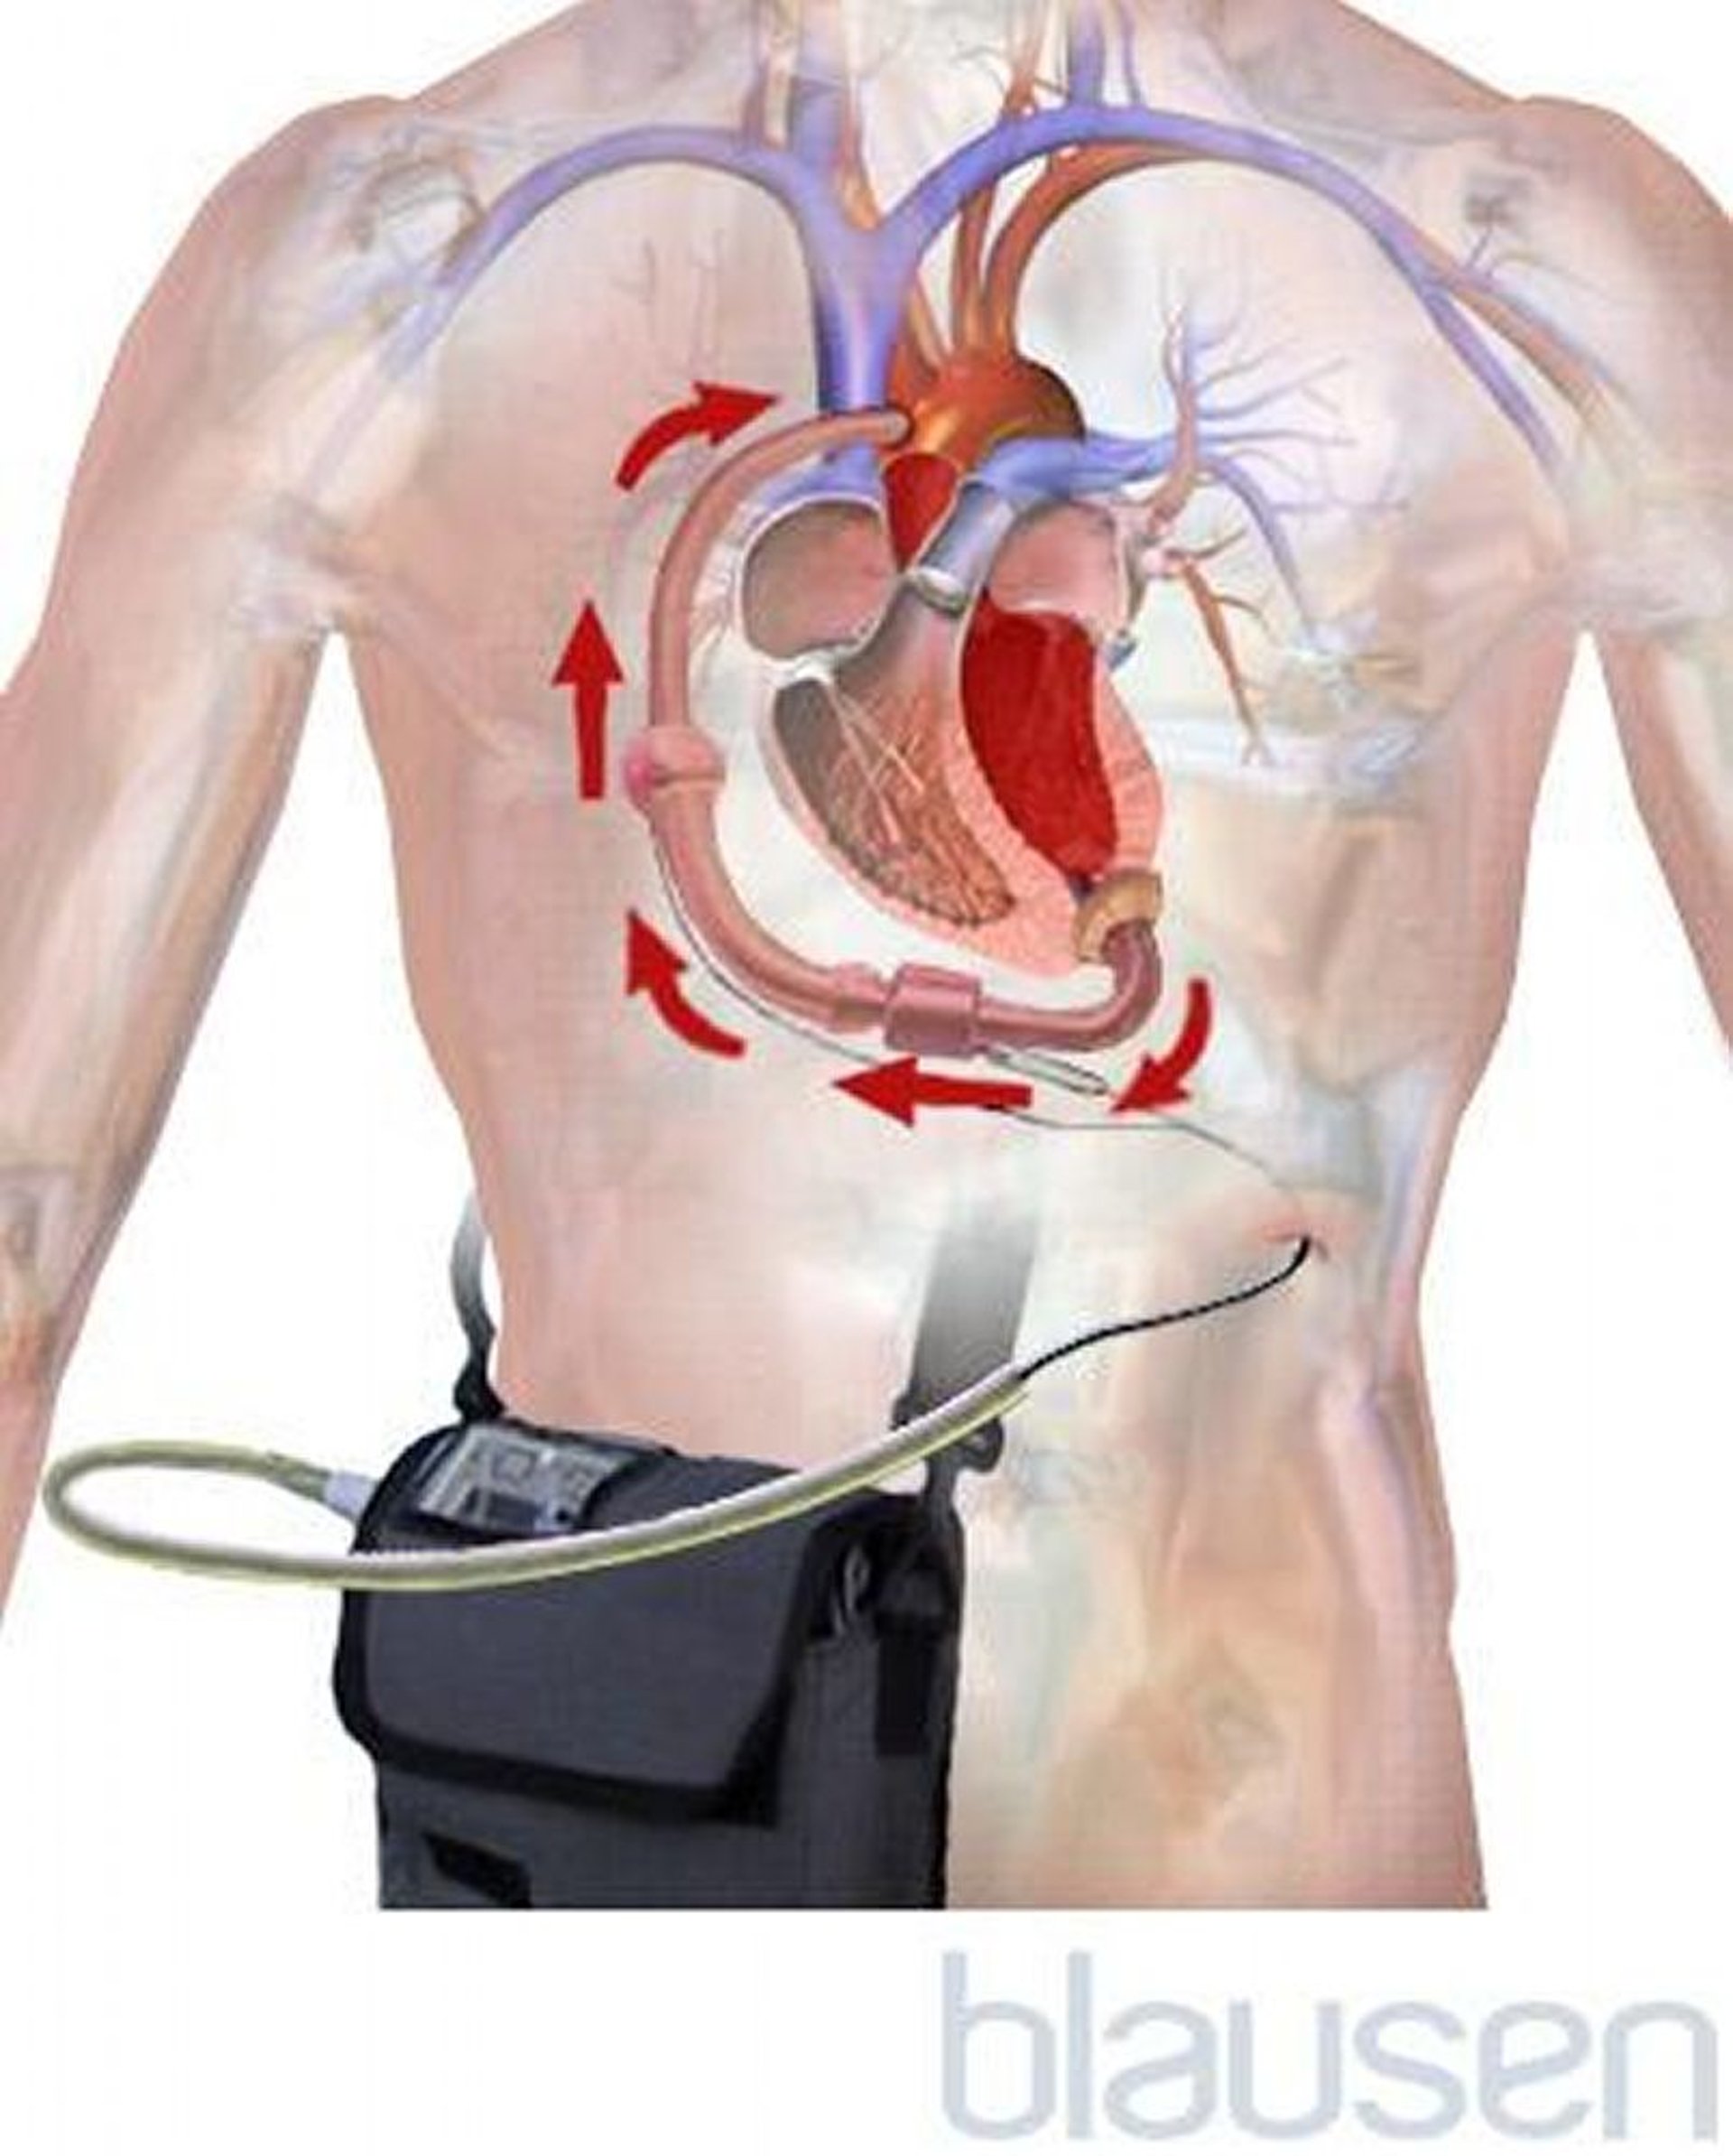 Dispositif d’assistance ventriculaire